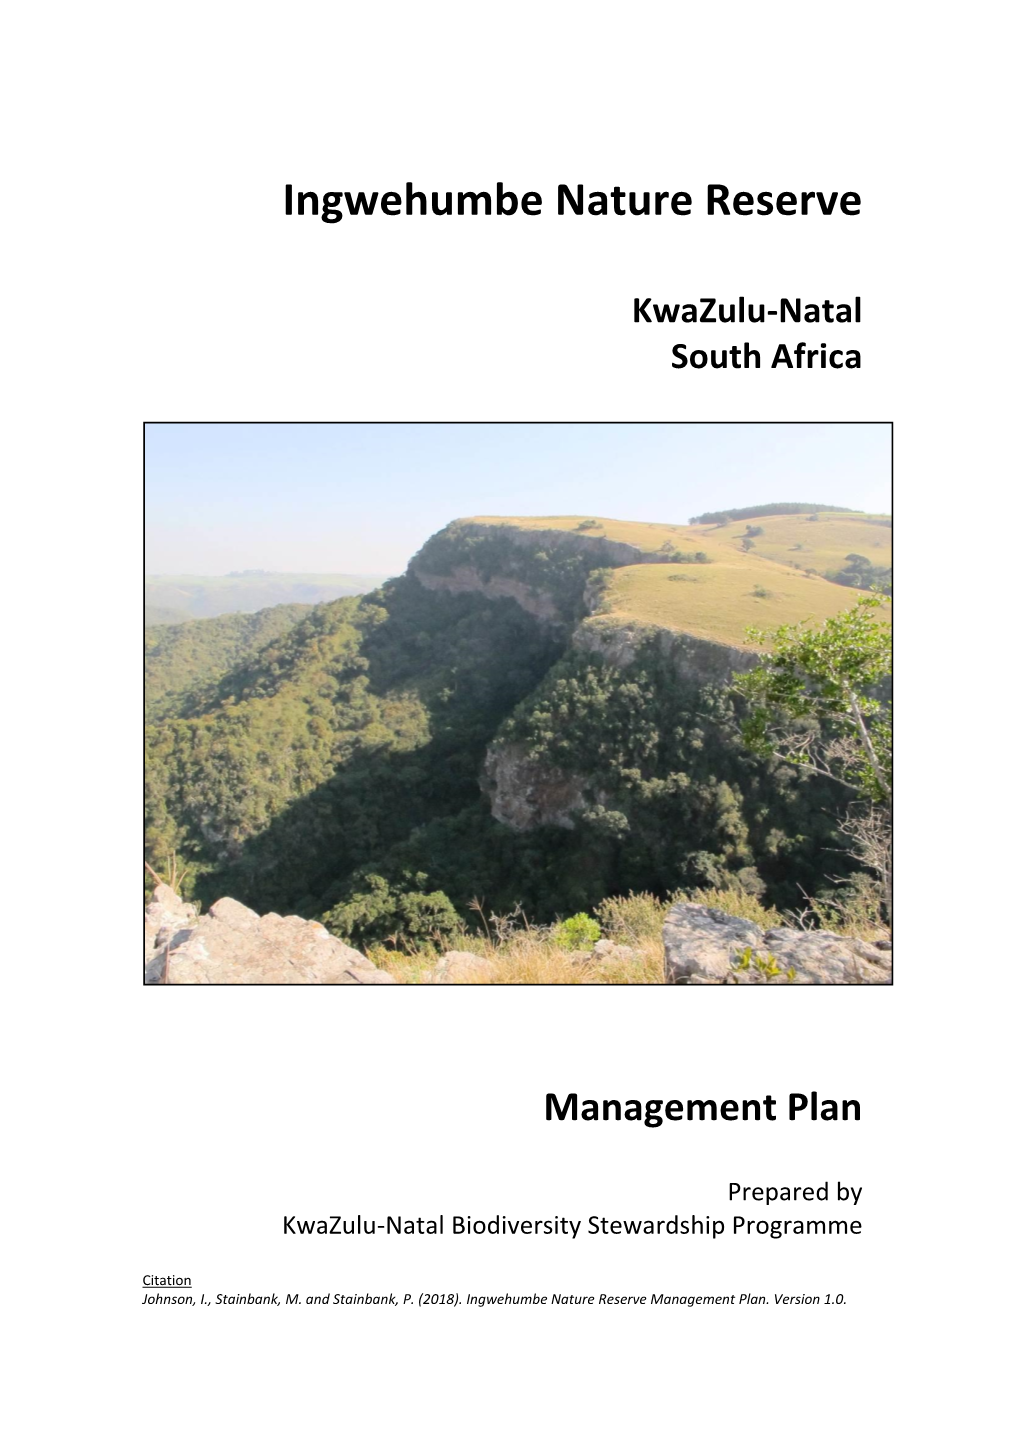 Ingwehumbe Management Plan Final 2018